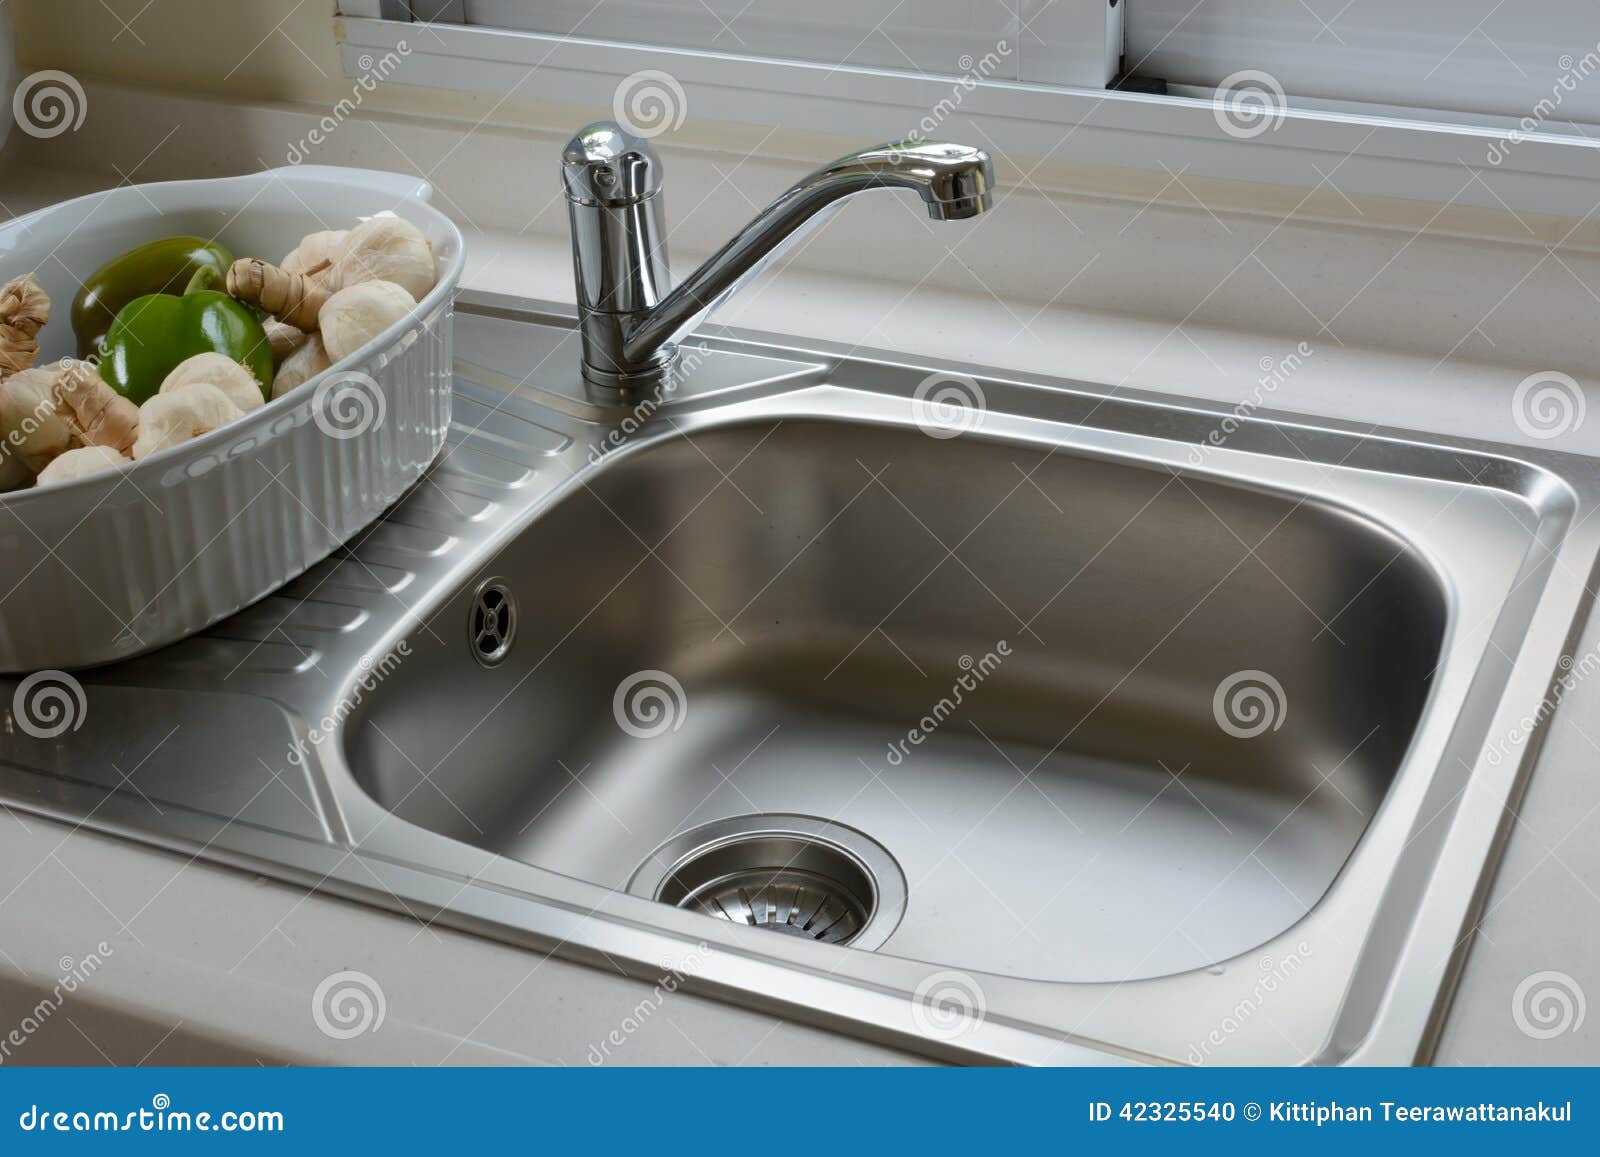 Lavabo en una cocina foto de archivo. Imagen de higiene - 42325540